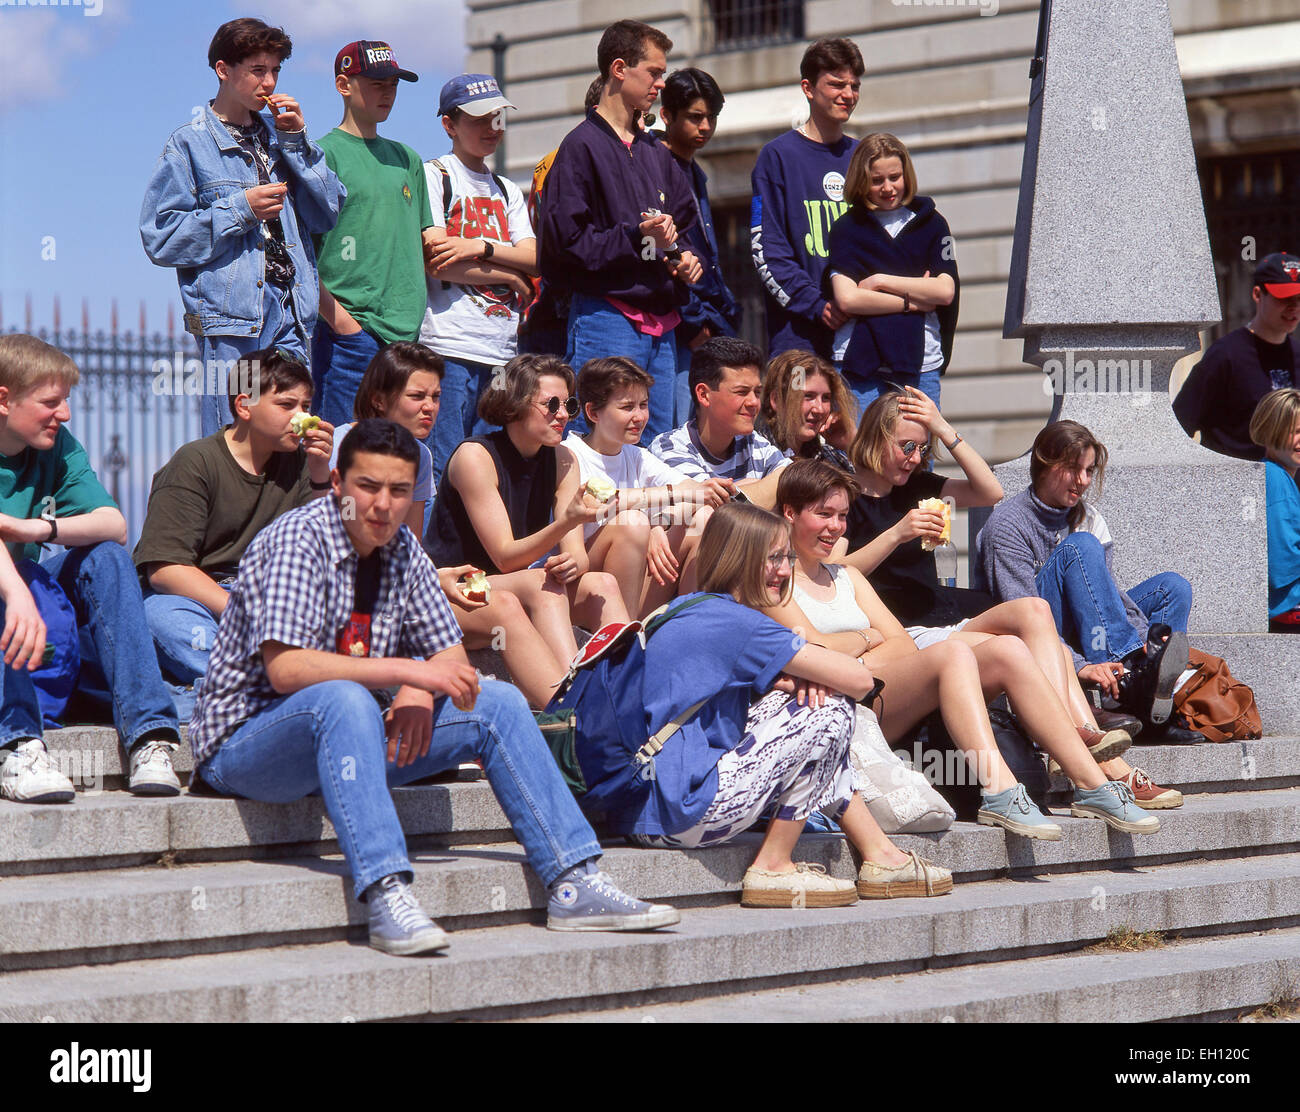 Gruppo di adolescenti seduti sui gradini, Parigi, Île-de-France, Francia Foto Stock